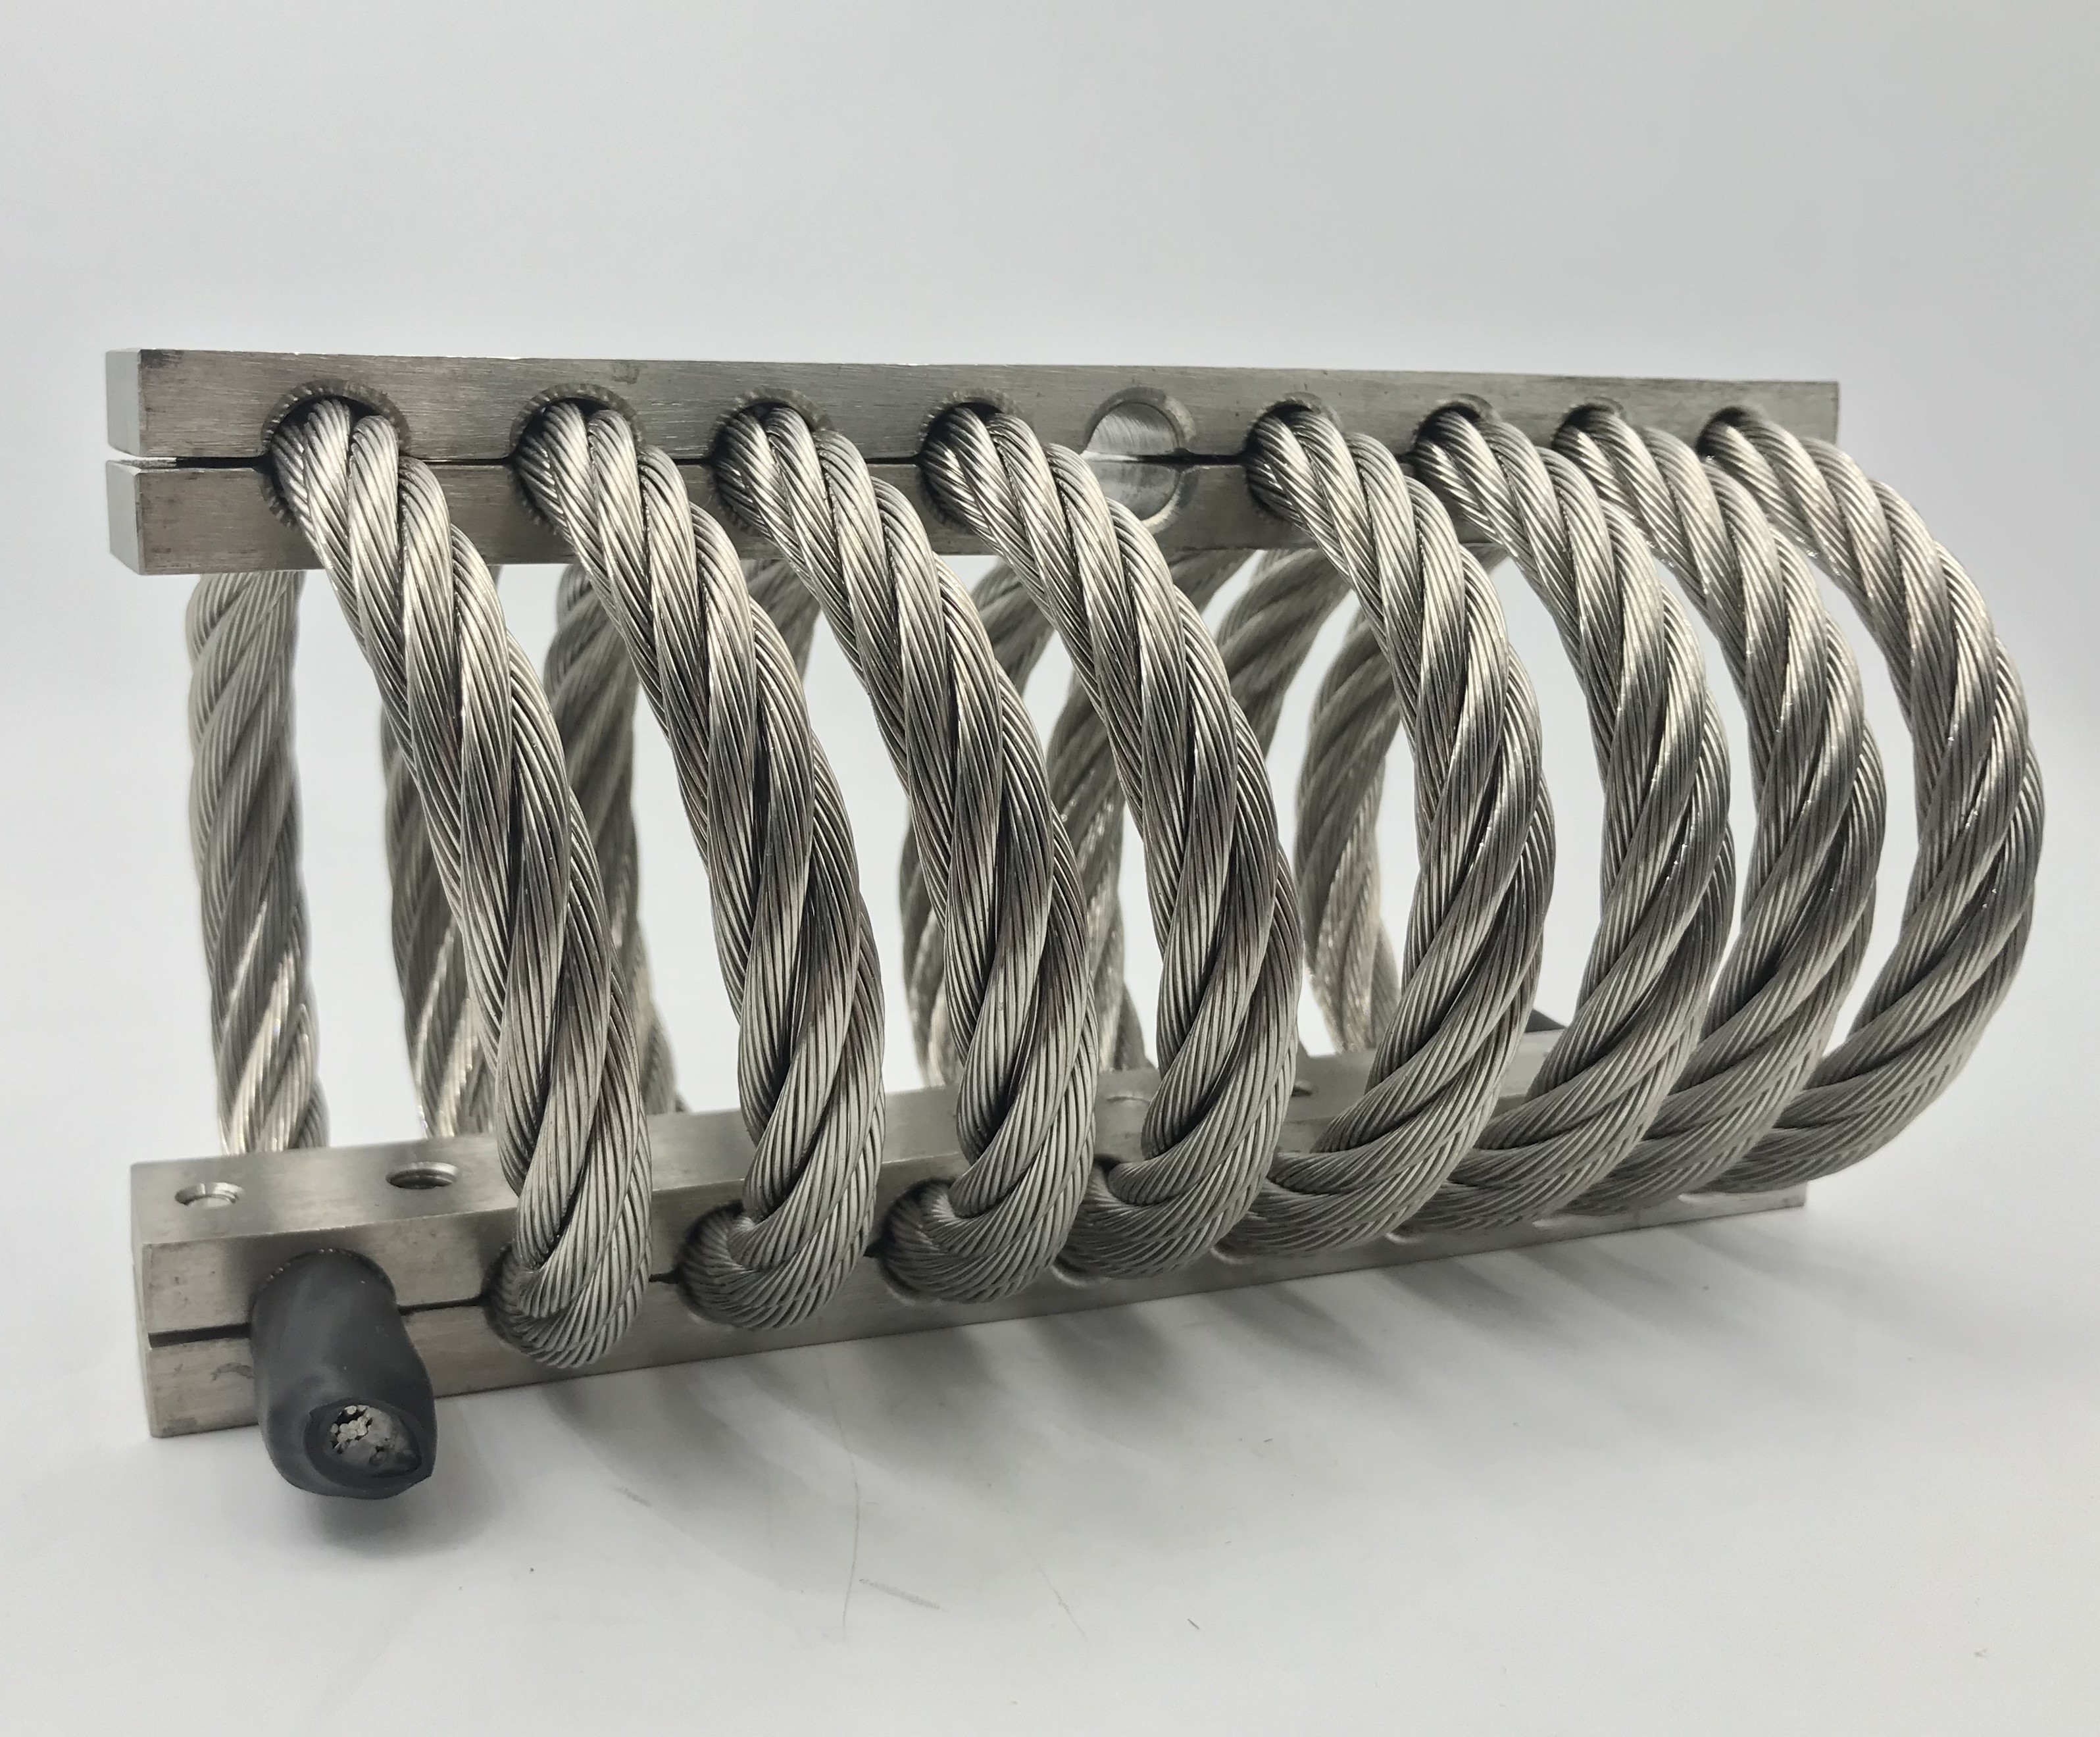 Amortisseur de vibration adapté aux besoins du client de fil de trous de montage pour le moteur industriel